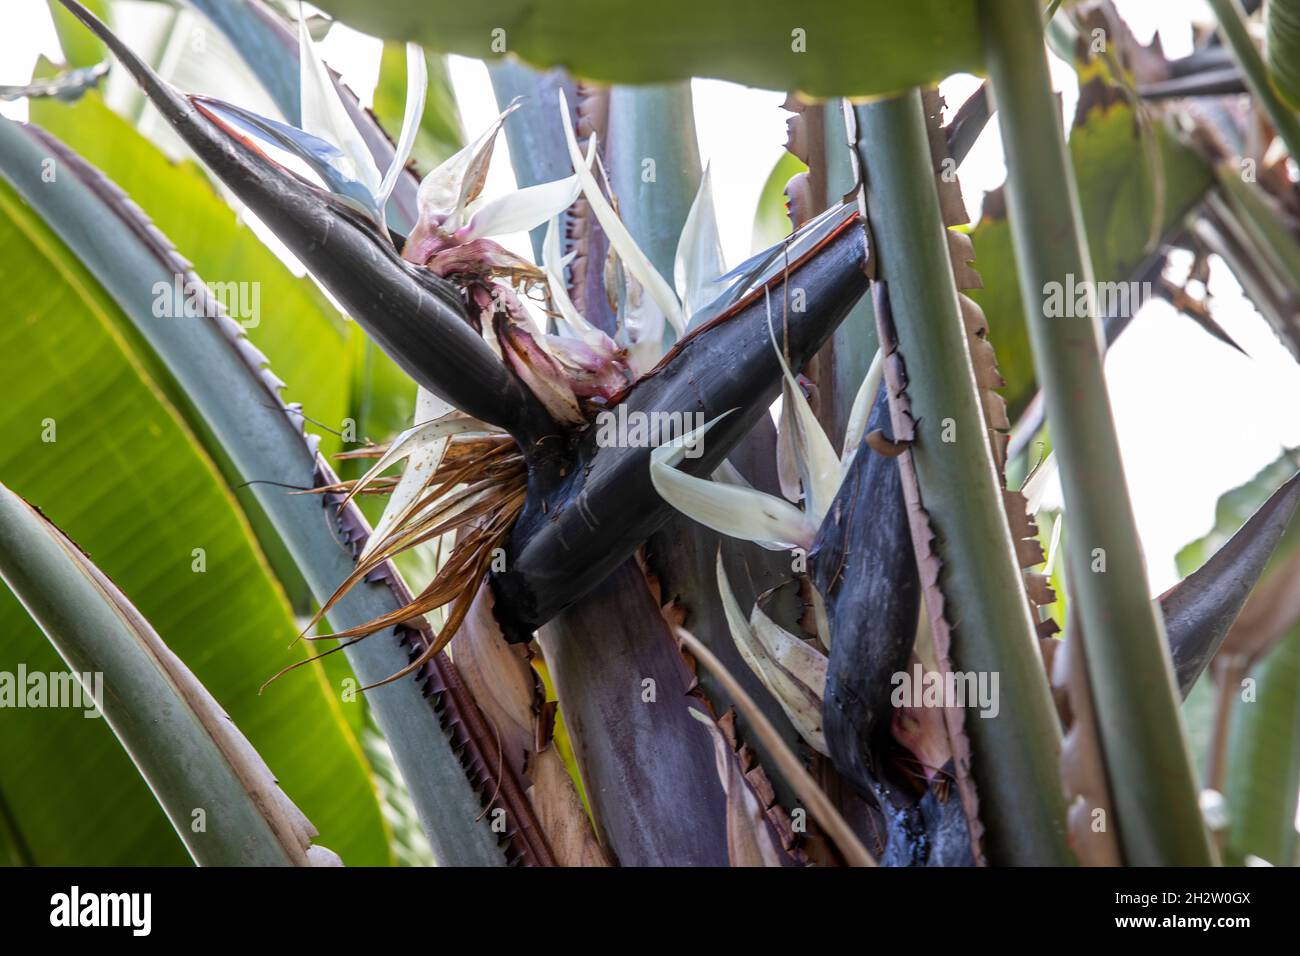 Giant Bird of Paradise or wild banana plant, strelitzia nicolai, in a Sydney garden,NSW,Australia on a spring day Stock Photo